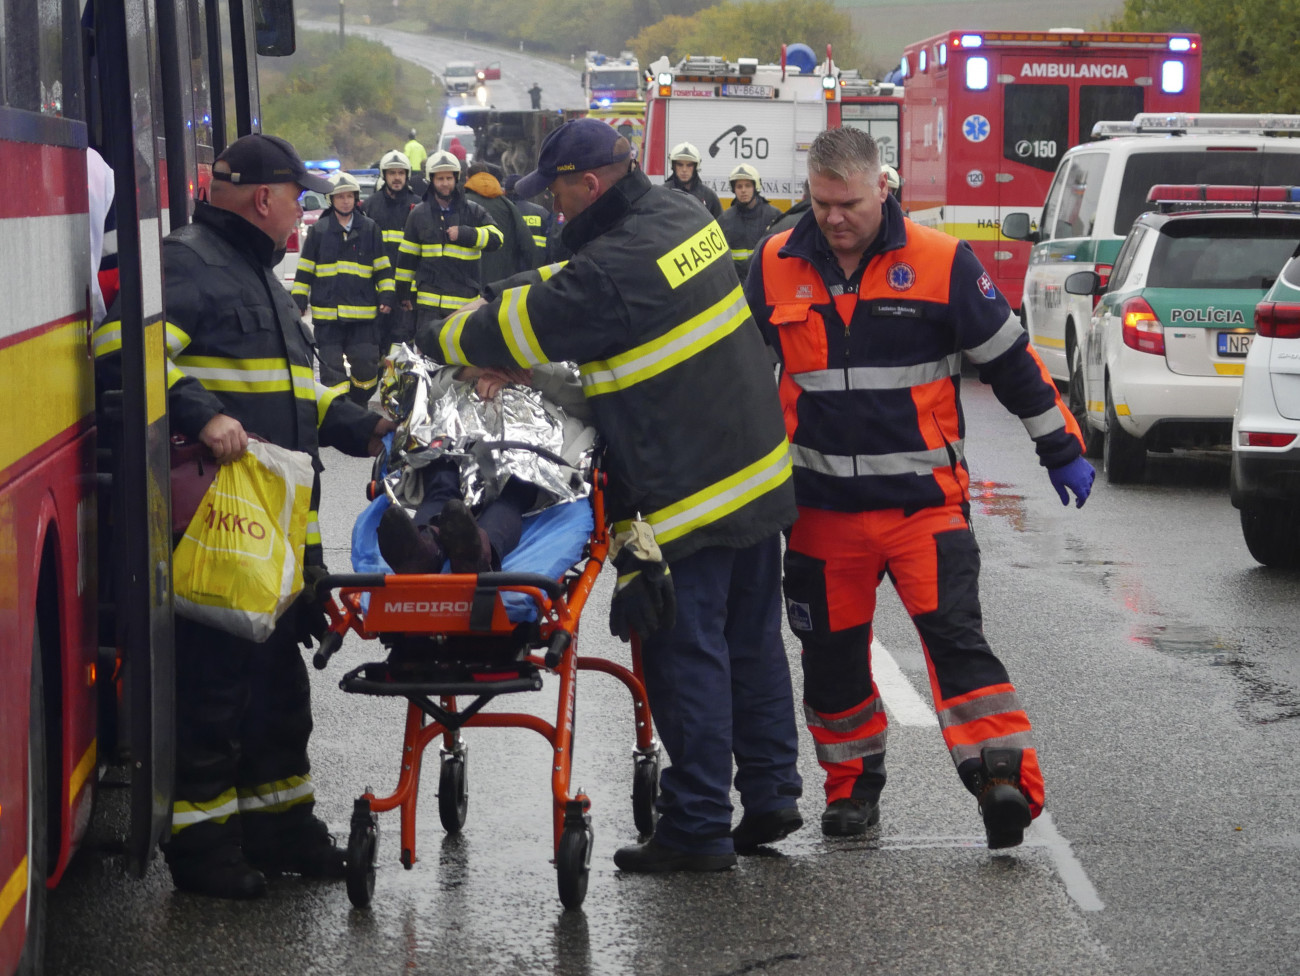 Nyitragerencsér, 2019. november 13.
Sebesültet visznek kórházba egy közúti baleset helyszínéről a nyugat-szlovákiai Nyitragerencsér közelében, ahol egy kamionnal ütközött egy autóbusz, amely az árokba szaladt és felborult 2019. november 13-án. A szerencsétlenségben legkevesebb tizenketten meghaltak, a sebesültek száma megközelíti a húszat.
MTI/AP/TASR/Milan Ivanic